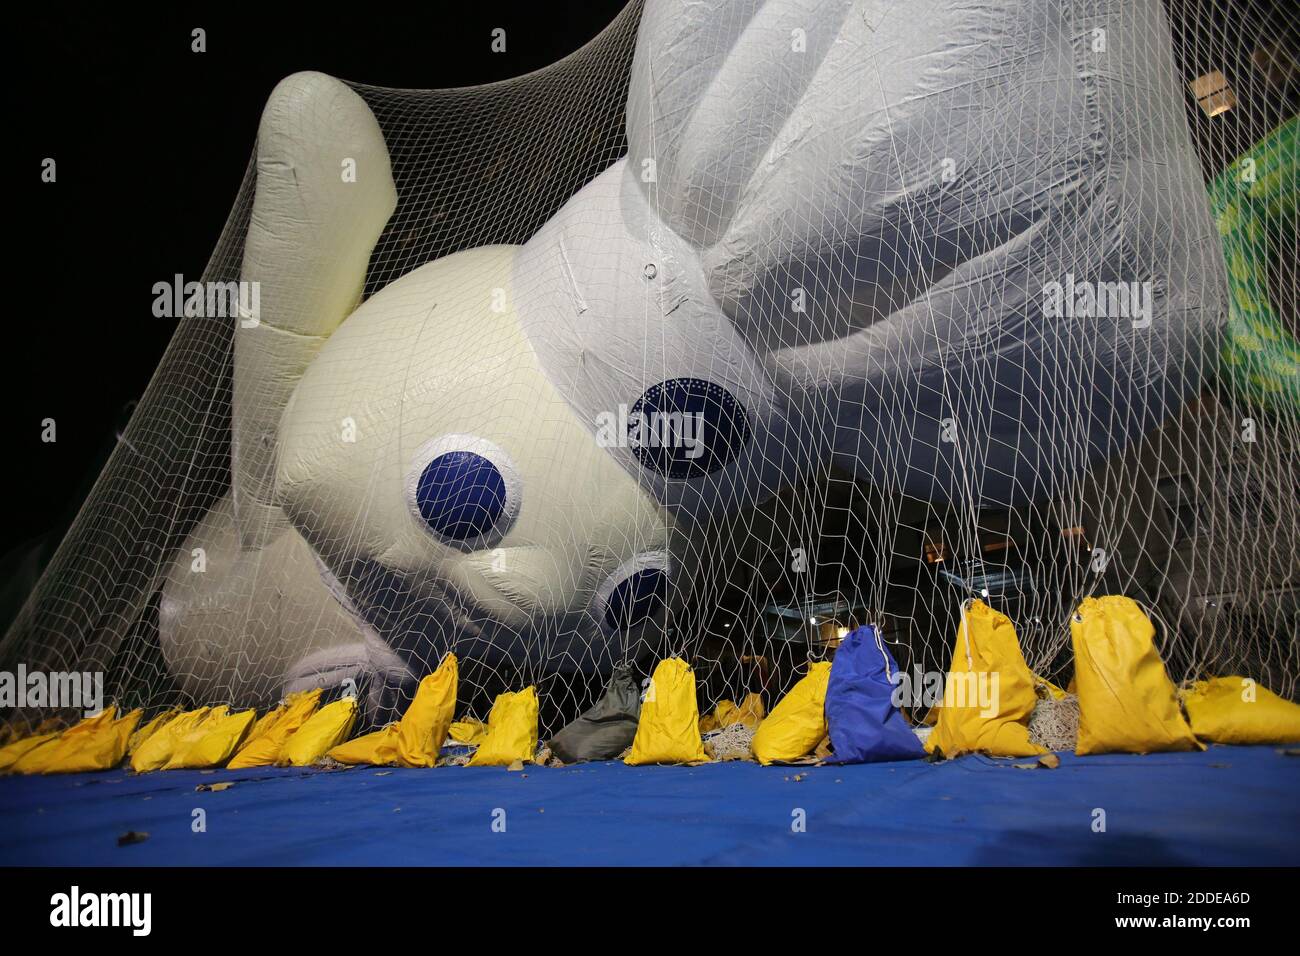 KEIN FILM, KEIN VIDEO, KEIN Fernsehen, KEIN DOKUMENTARFILM - der Pillsbury  Doughboy Ballon bei der Macy's Thanksgiving Parade Inflation Veranstaltung  am Mittwoch, 22. November 2017, in New York City, NY, USA. Foto